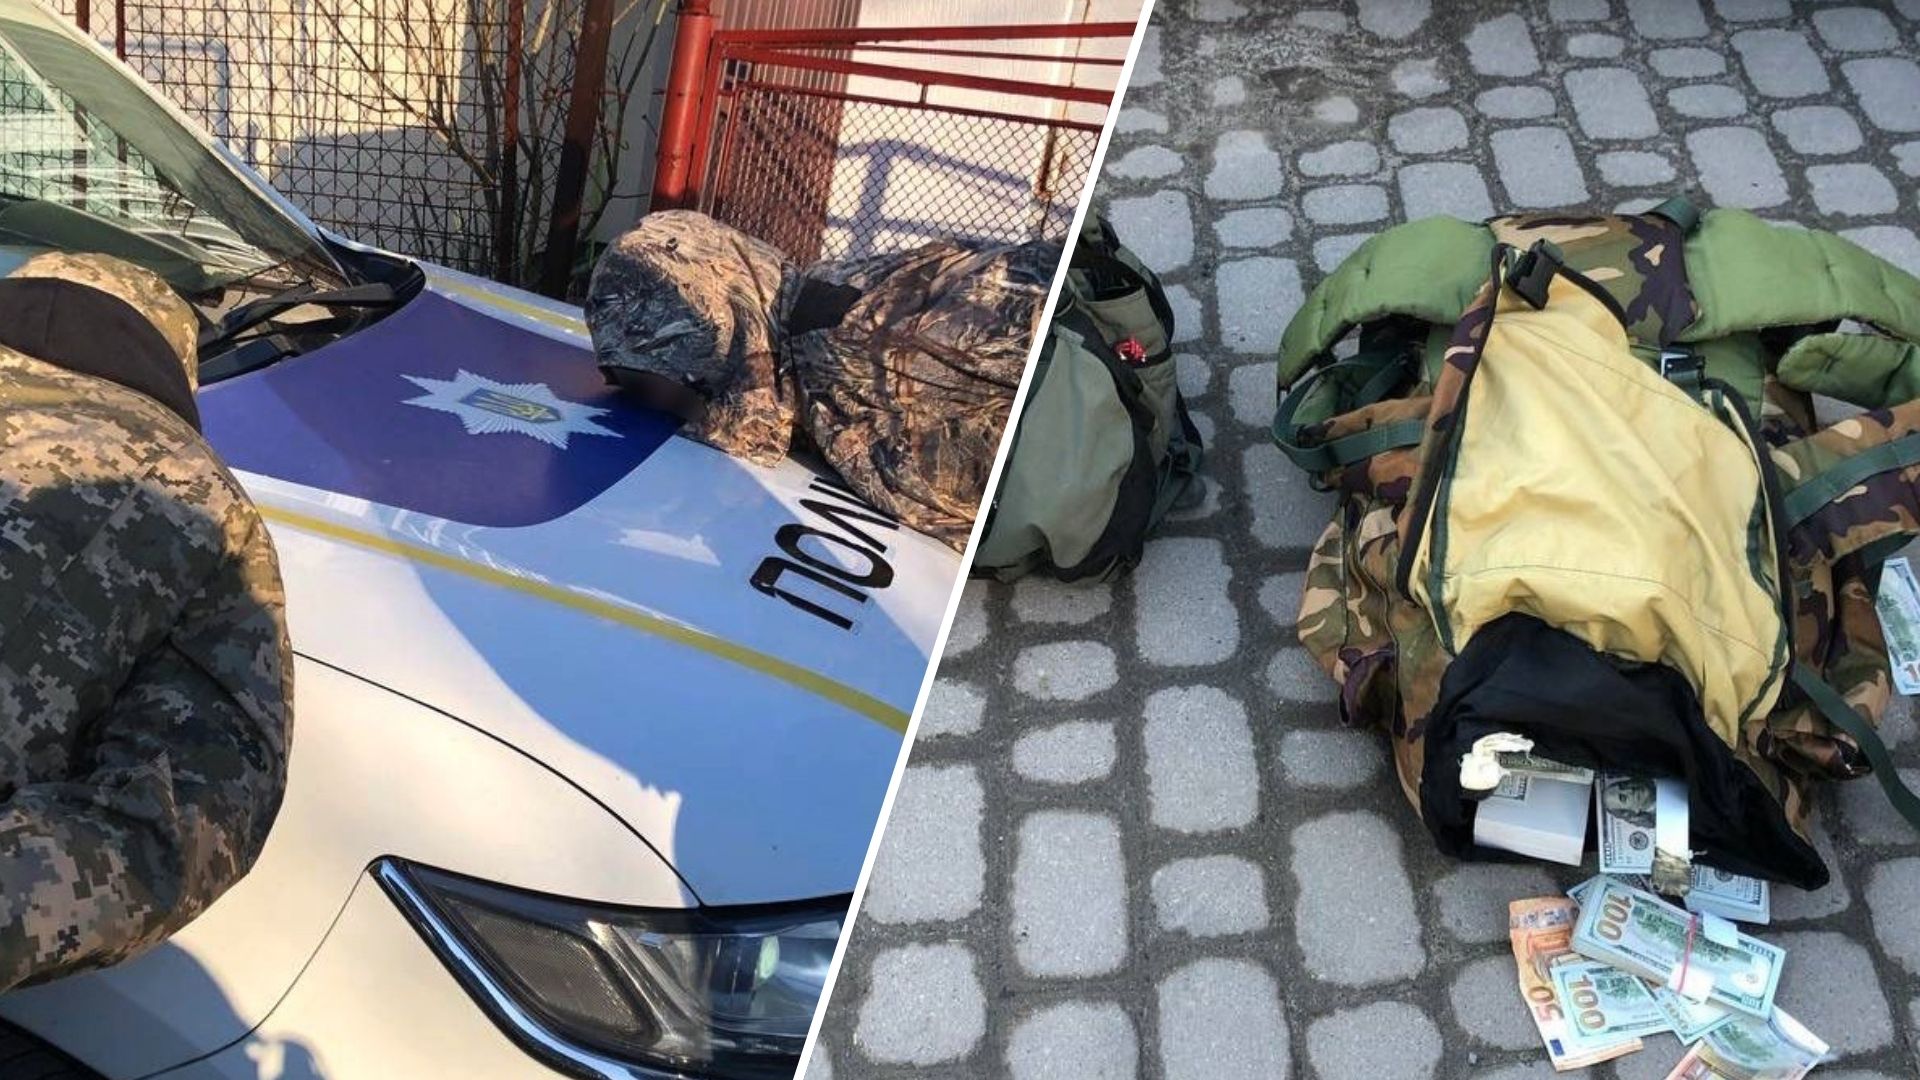 Lvivben a rendőrség őrizetbe vett két férfit, akiket azzal gyanúsítanak, hogy egy bankból loptak. A támadókat, egy 31 éves és egy 40 éves lvivi férfit a Piasecki utcában vették őrizetbe, miután nagy zsákokkal és kalapácsokkal elhagyták a Volodimir Nagy utcai bankot.